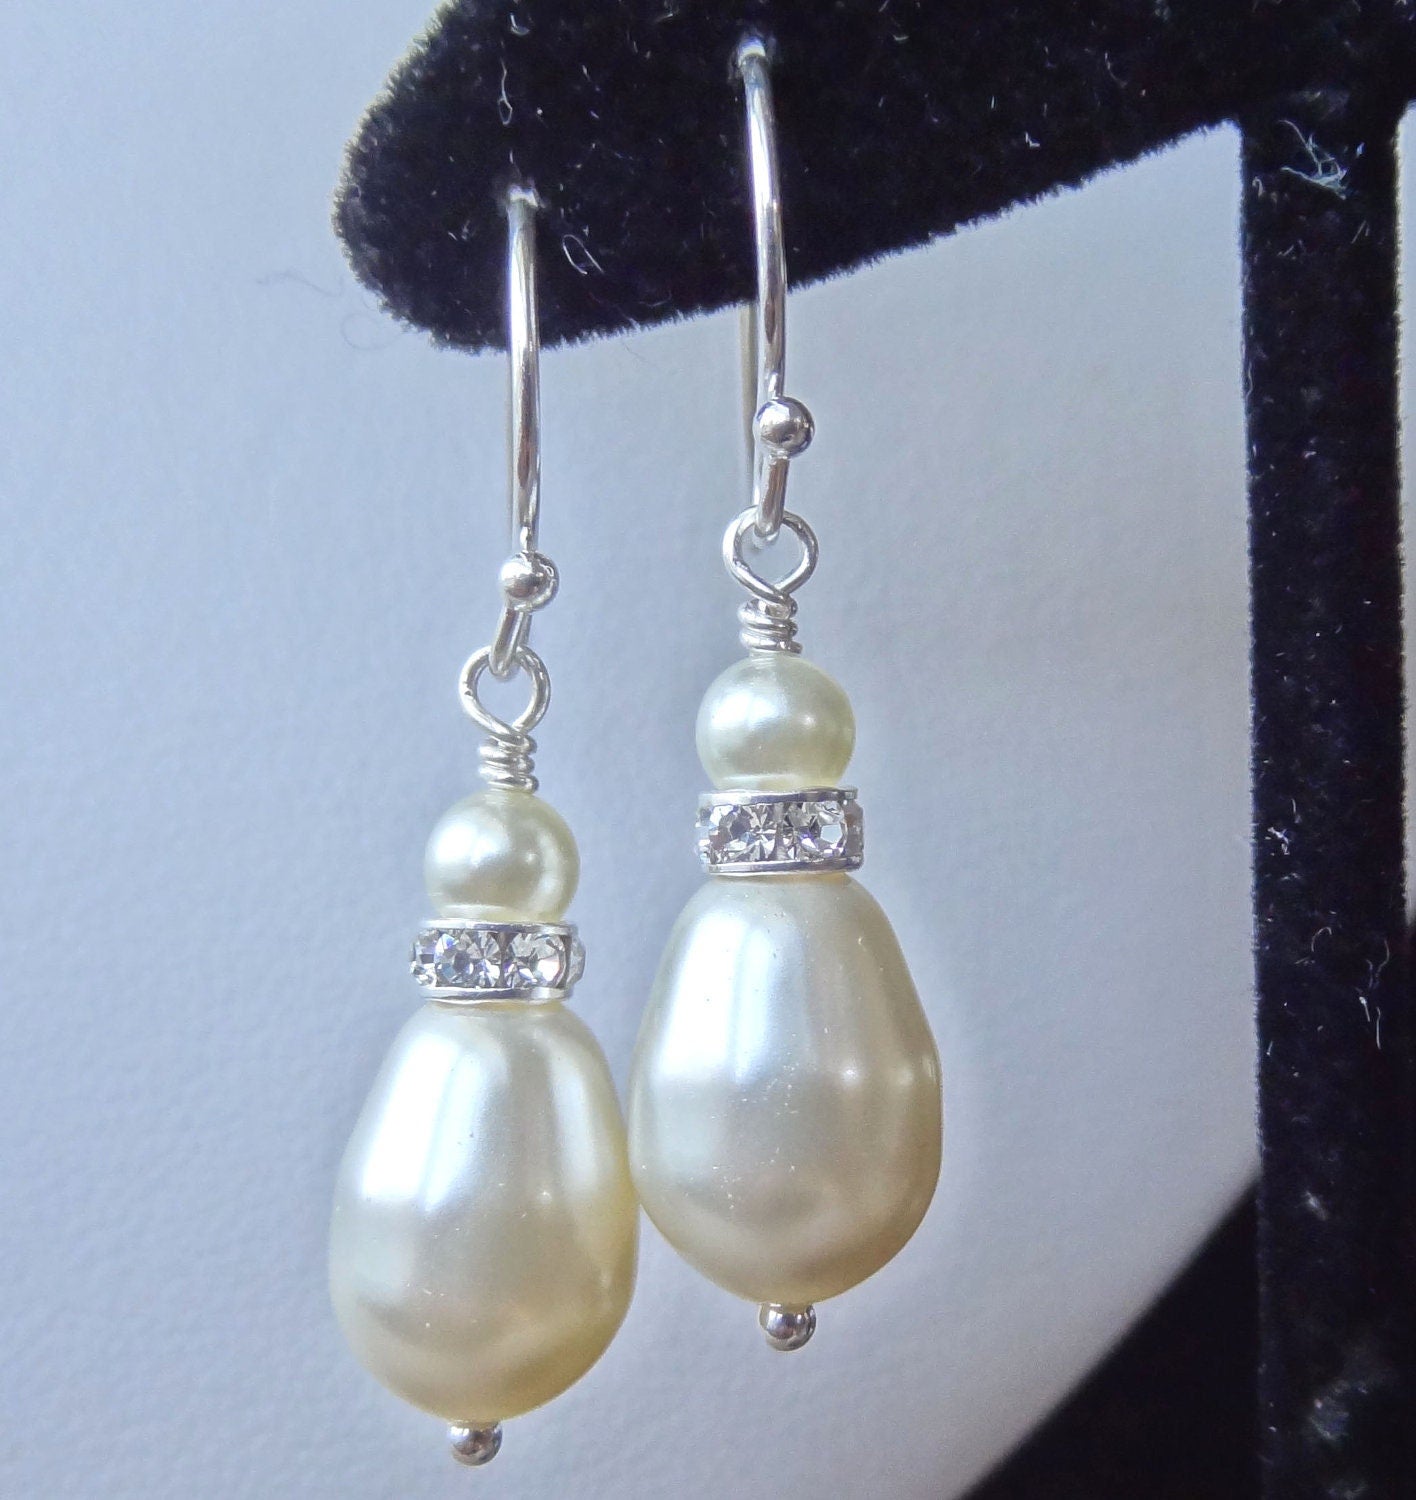 Crystal Drop Pearl Earrings,Bridesmaid Gift Set Earrings,Bridesmaid Earrings,Wedding Bride Bridal Pearl Crystal Earrings,Bride Pearl Earring